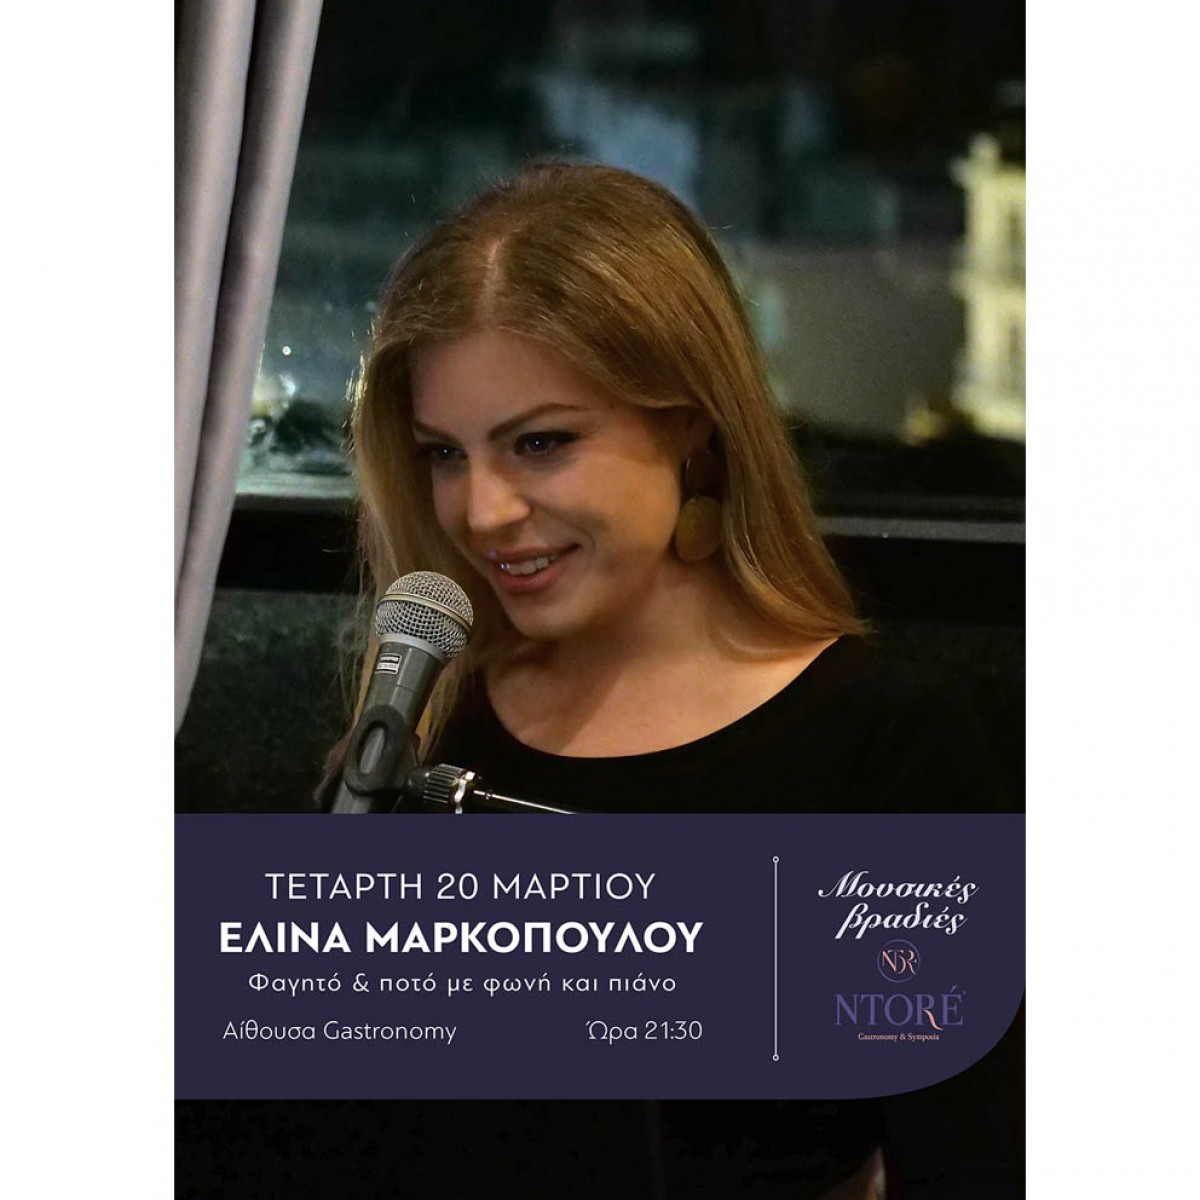 Φαγητό και ποτό με την Ελίνα Μαρκοπούλου στη φωνή και το πιάνο και την καλύτερη θέα της πόλης! Τετάρτη 20 Μαρτίου, 21:30